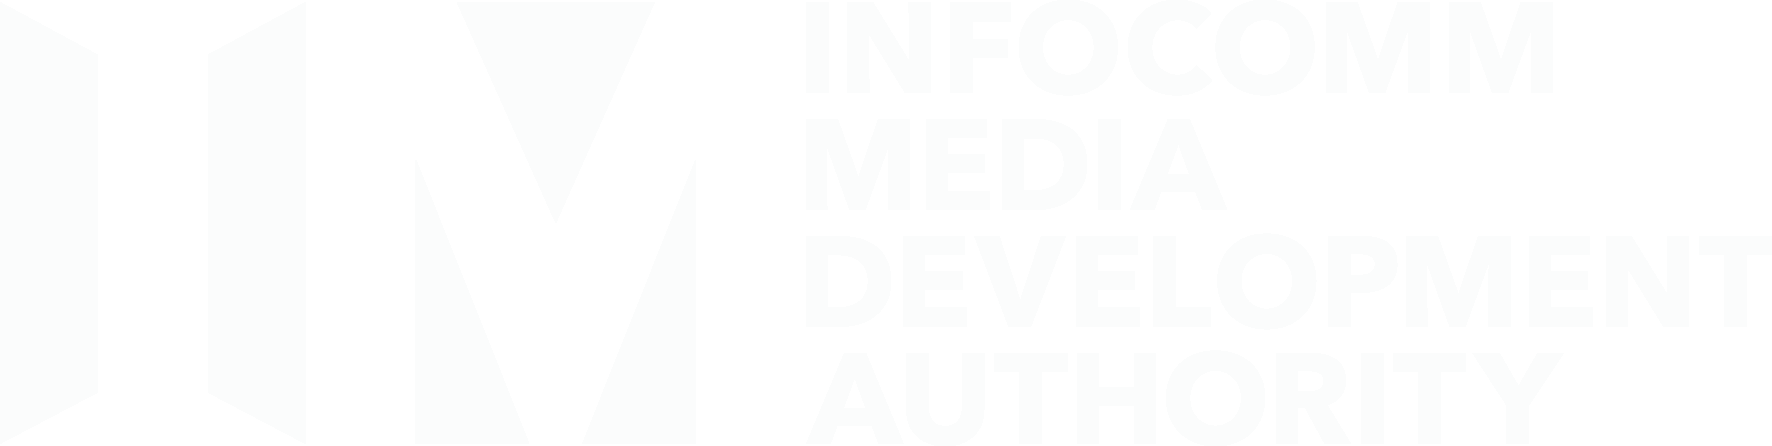 Infocomm media development authority